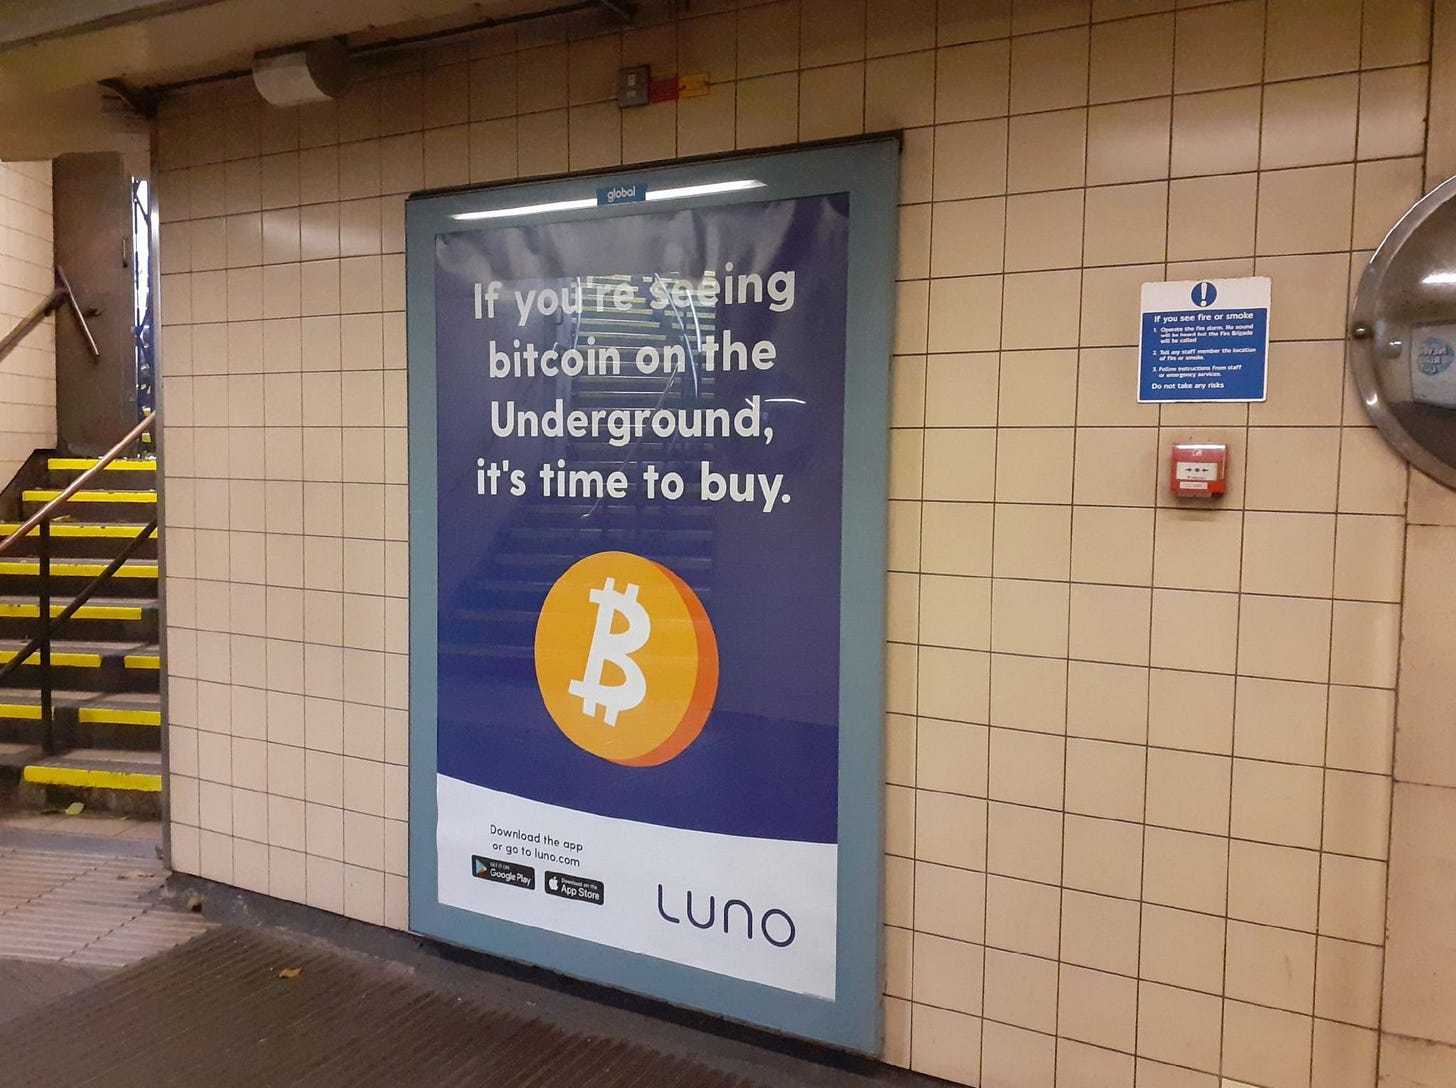 Irresponsible&#39; London Underground Bitcoin advert banned - BBC News